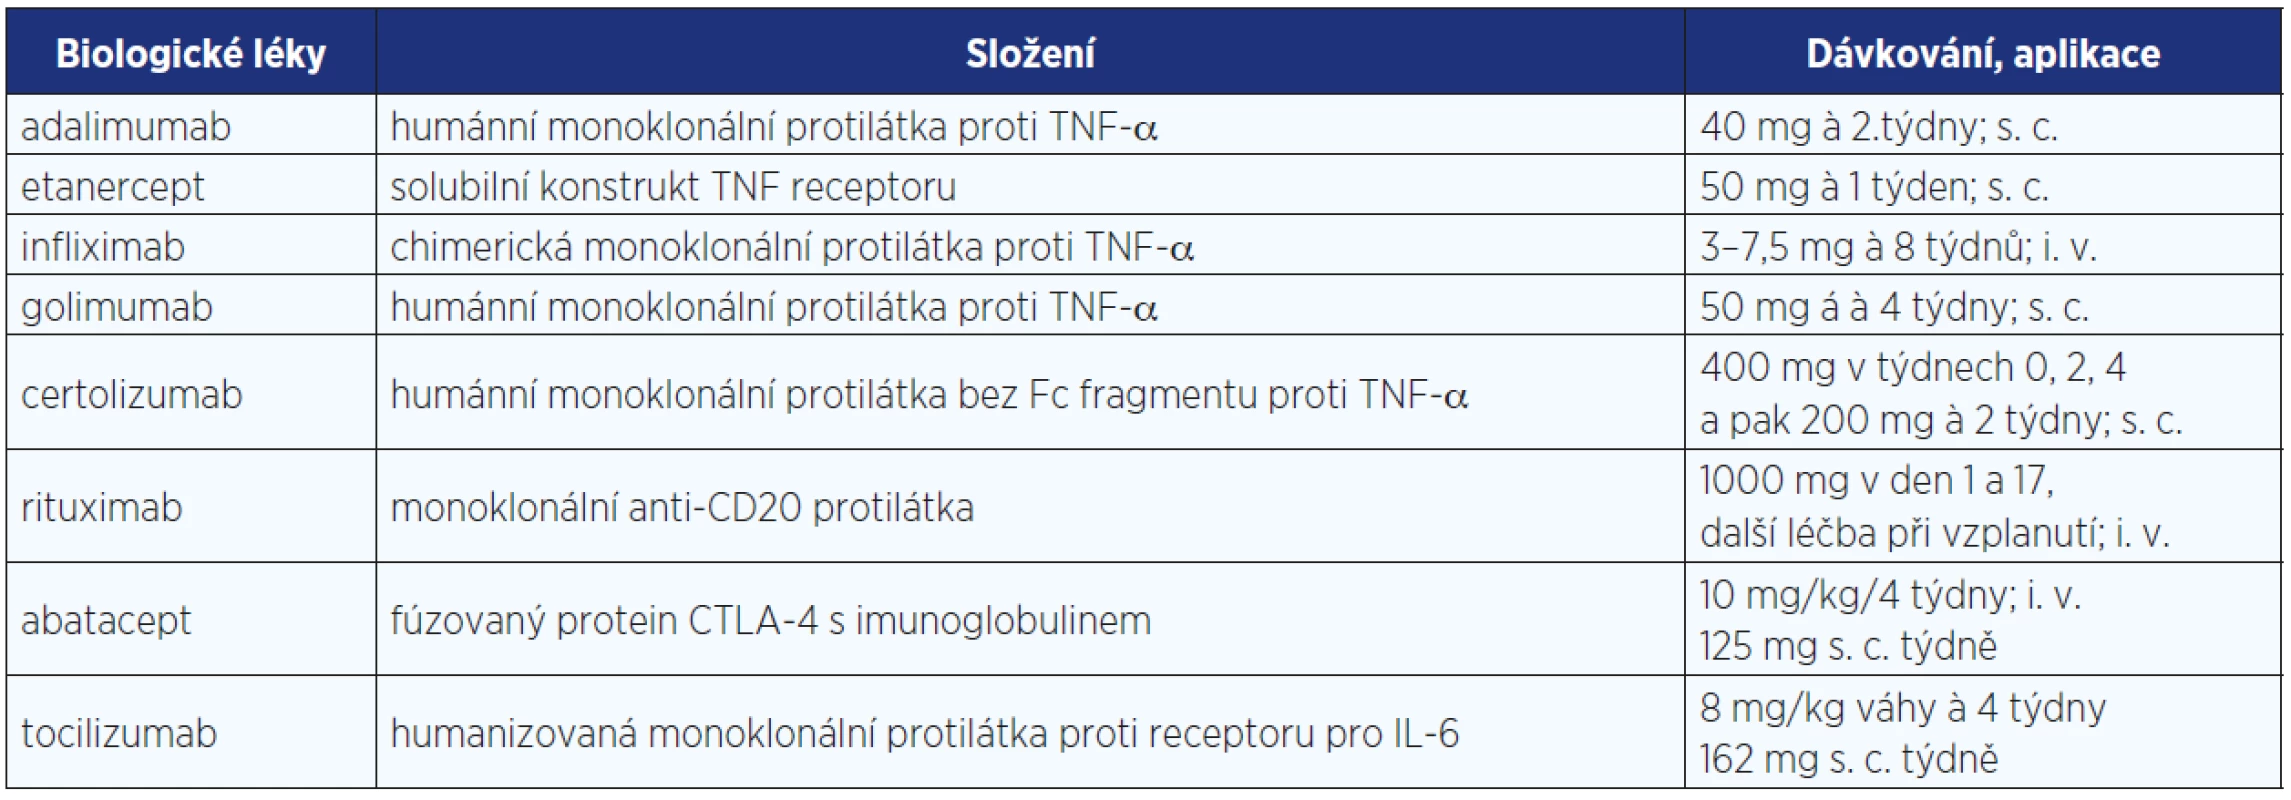 Biologické léky registrované v České republice pro léčbu revmatických onemocnění